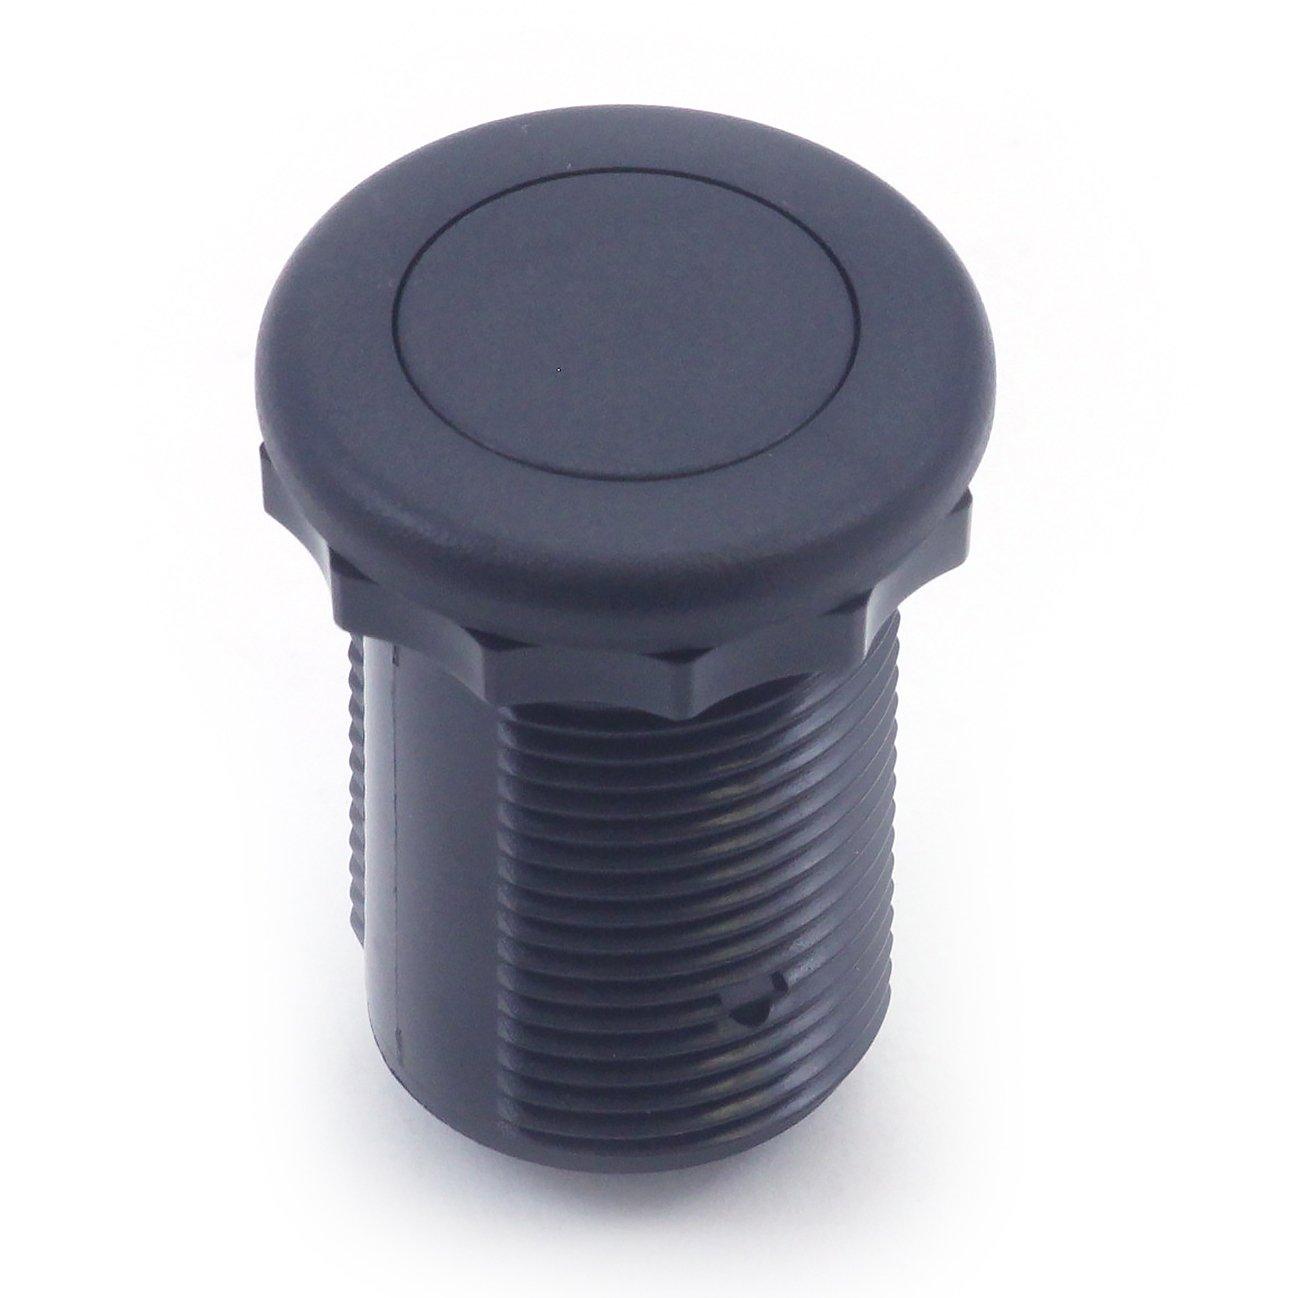 Therm Air Button For Aquatemp, Black, 50-00602